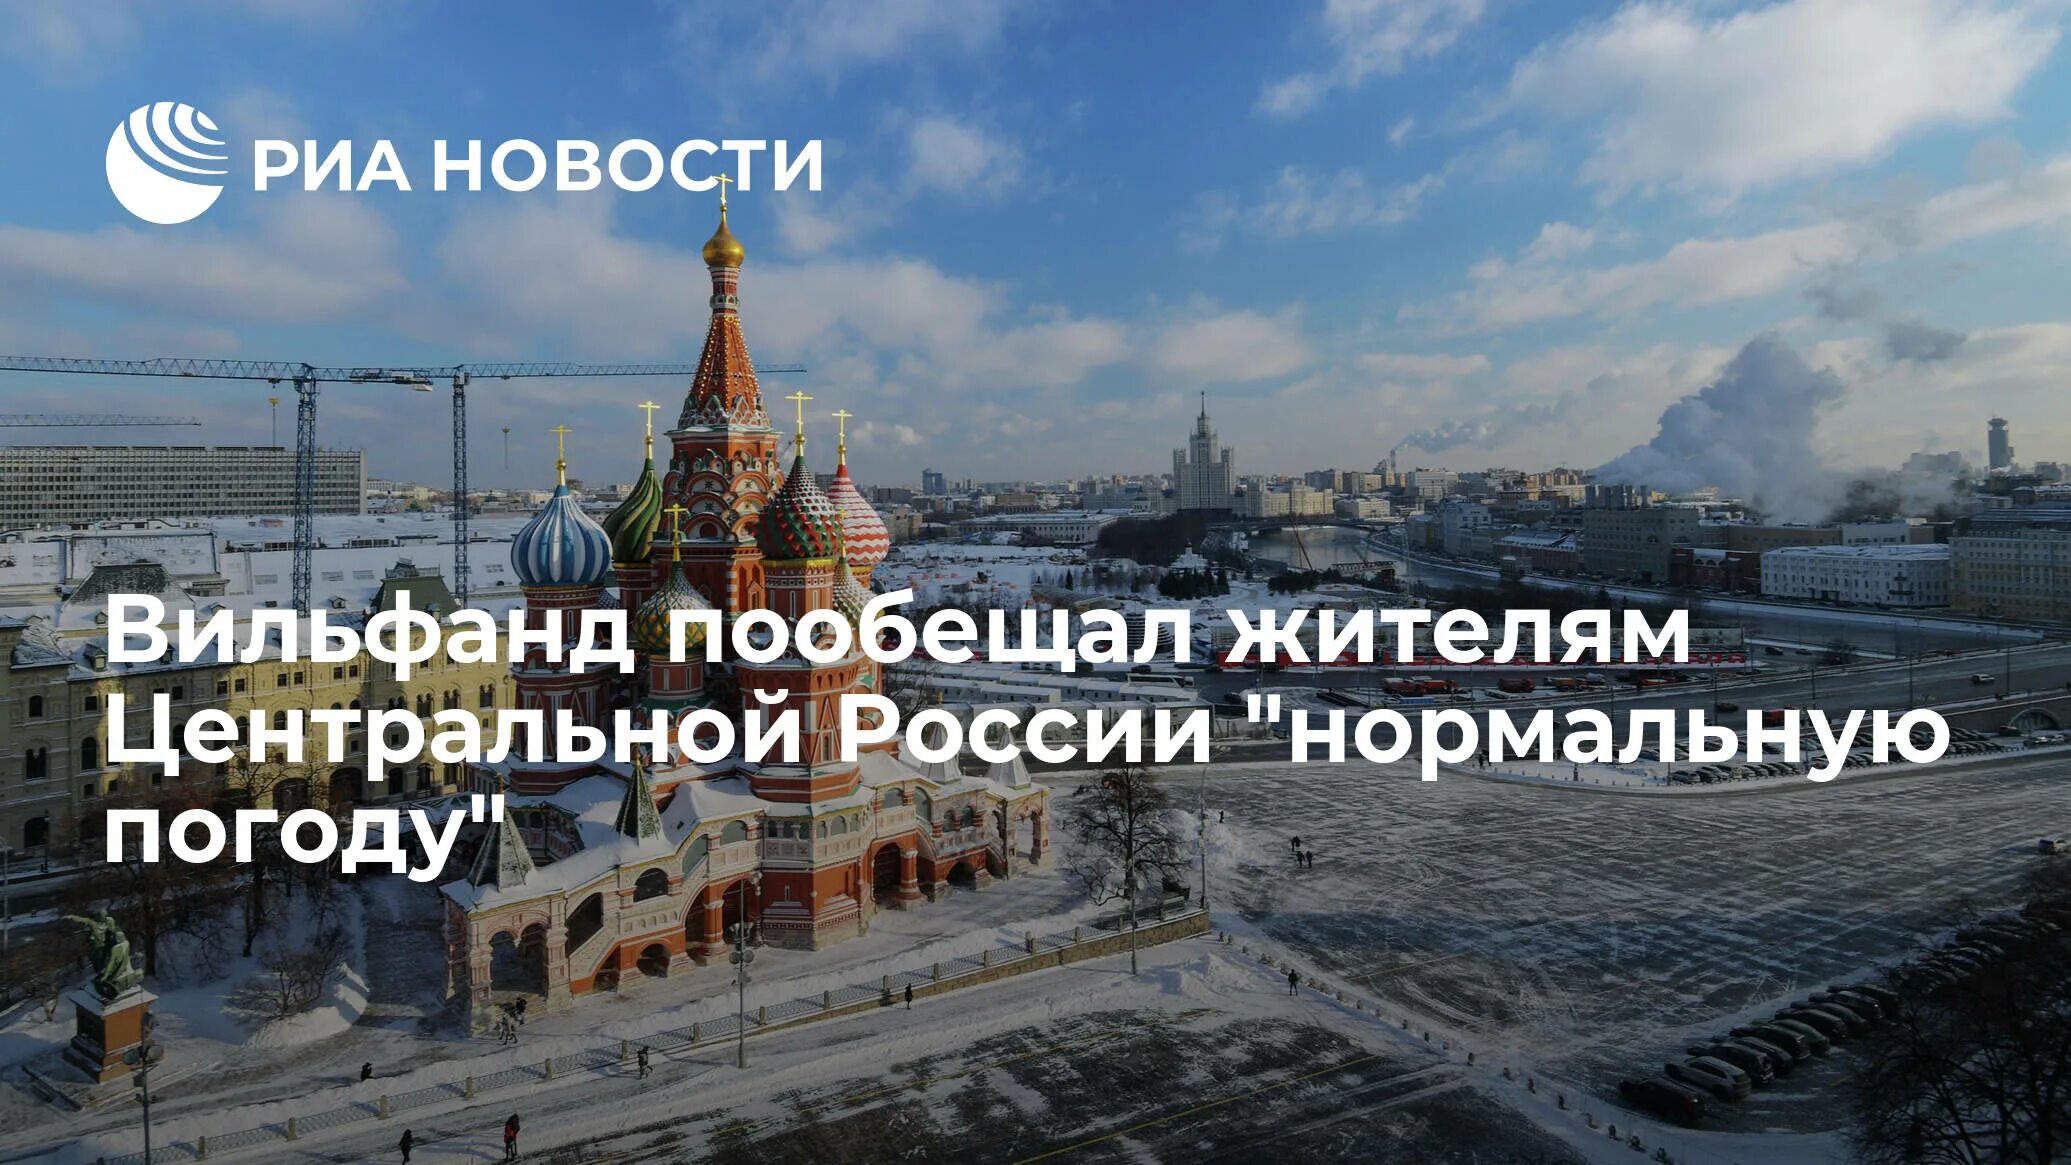 Году его признали лучшим. ООН признала Москву лучшим мегаполисом. Москва признана лучшим городом. Москва лучший город земли.